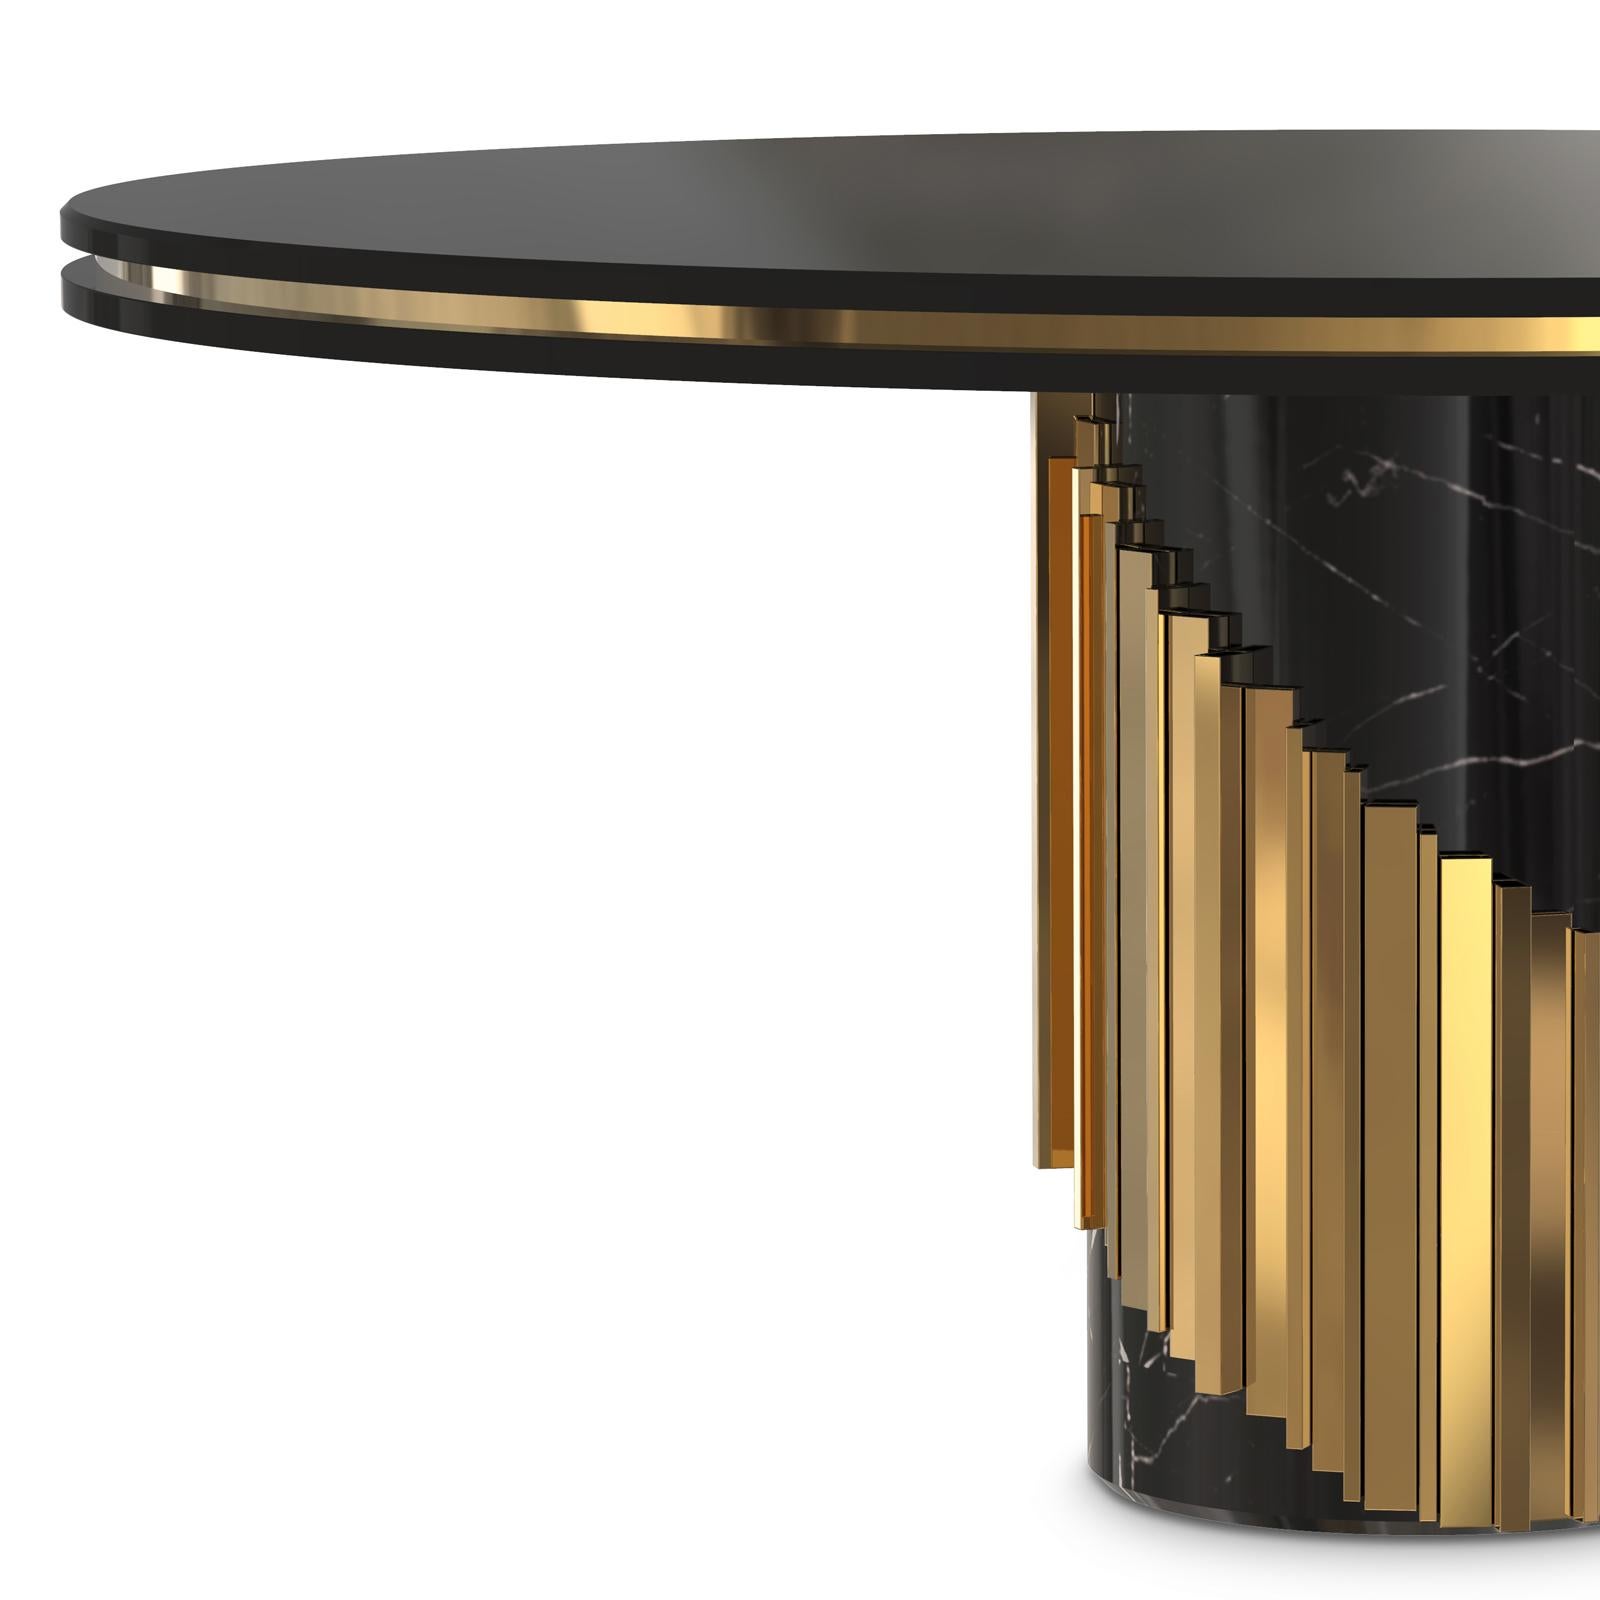 Table maxima ronde avec plateau en bois laqué noir
avec bord en laiton poli autour. Sur socle en marbre noir
avec des tiges en laiton poli autour de la base.